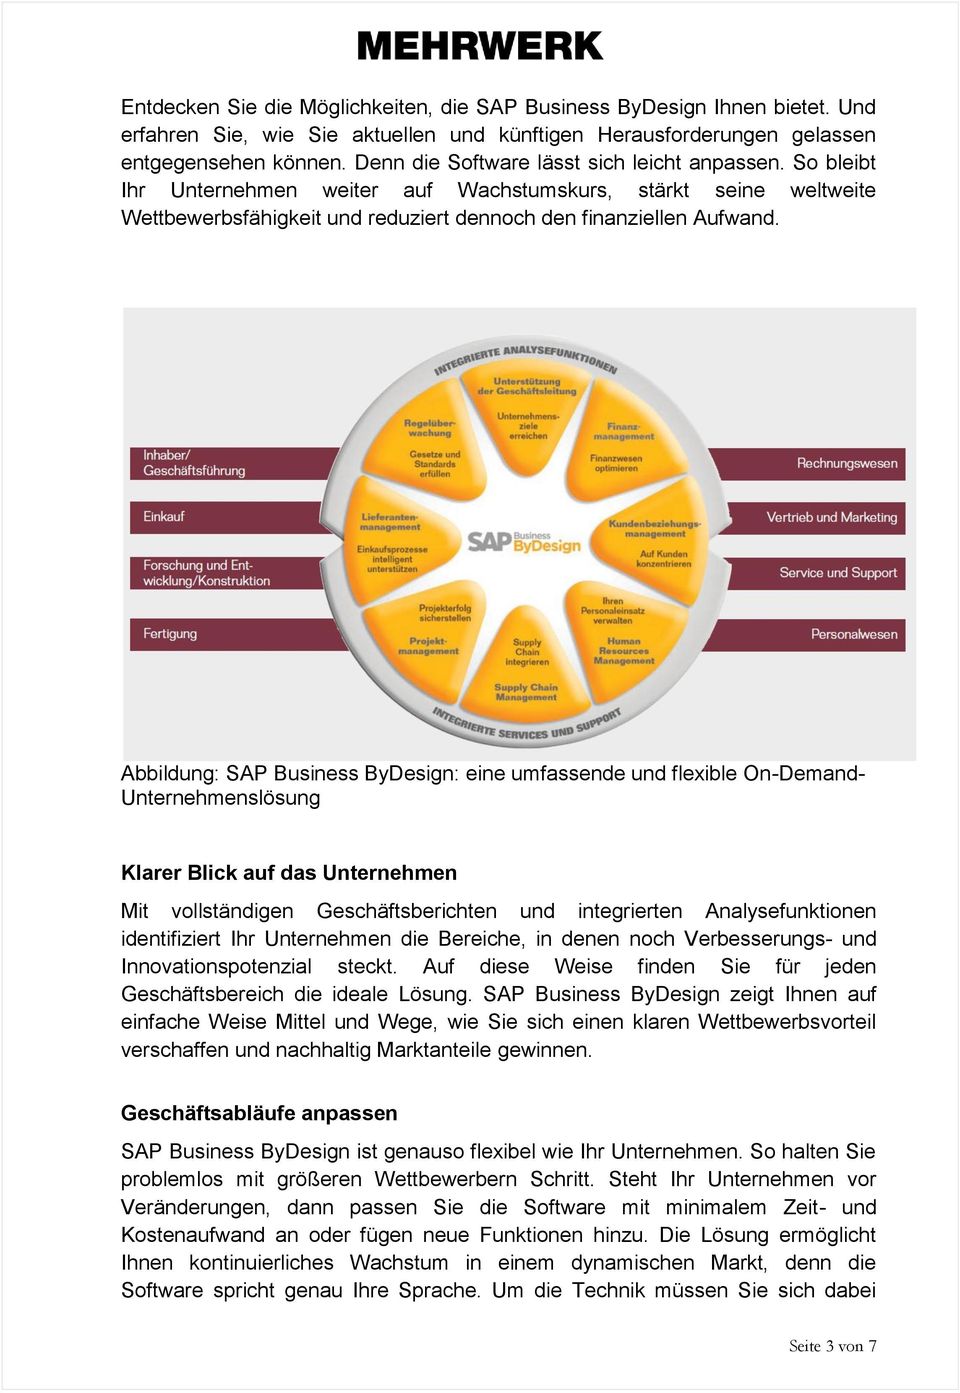 Abbildung: SAP Business ByDesign: eine umfassende und flexible On-Demand- Unternehmenslösung Klarer Blick auf das Unternehmen Mit vollständigen Geschäftsberichten und integrierten Analysefunktionen